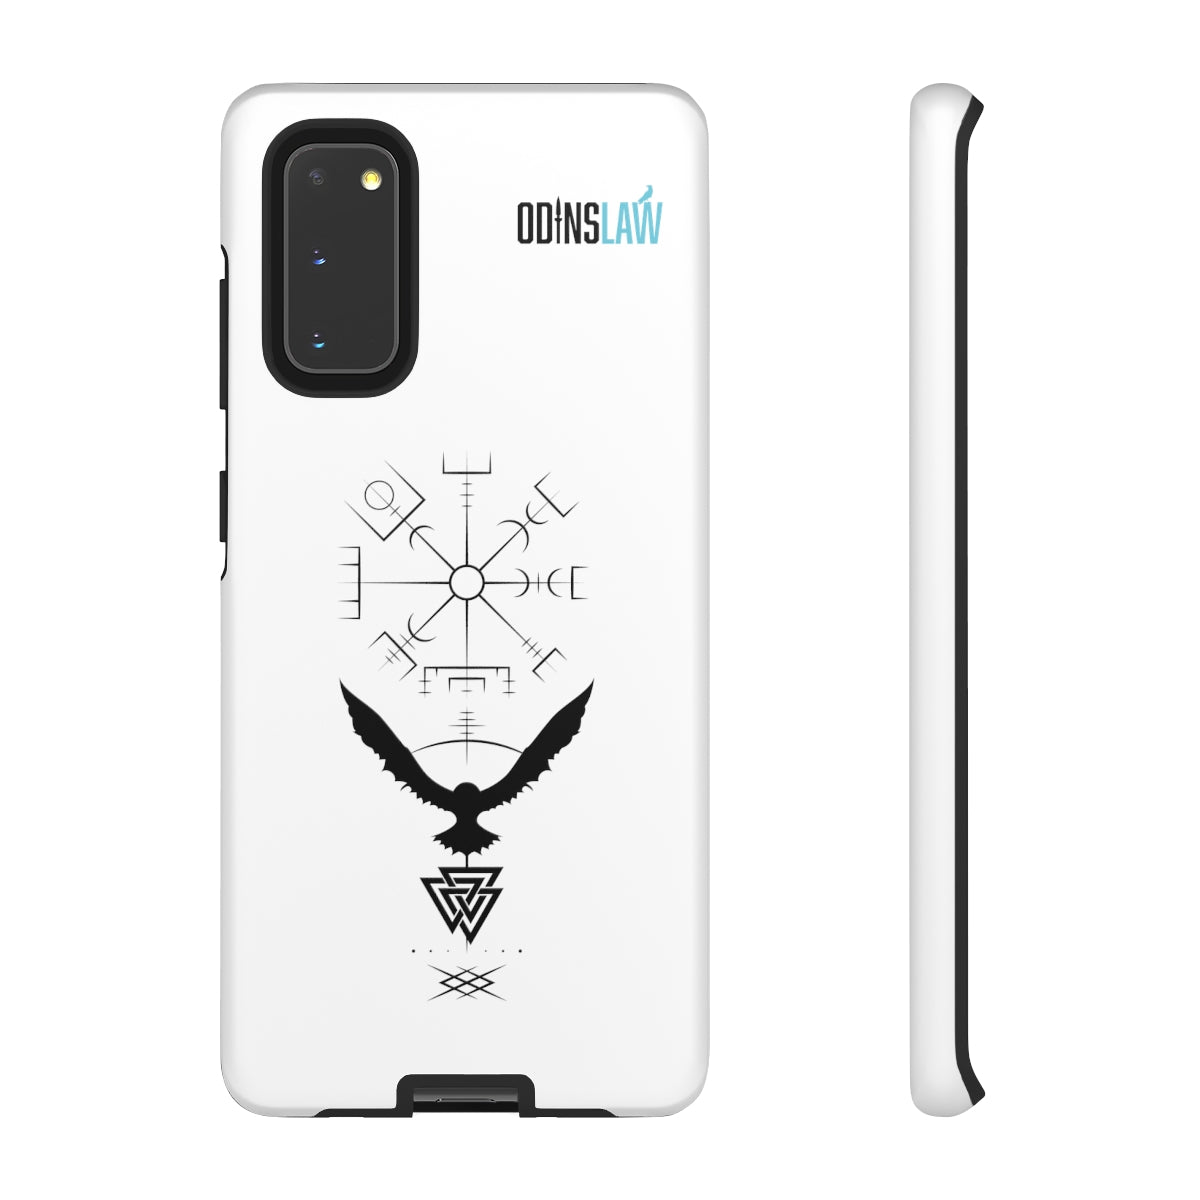 Odinslaw Smartphone Case